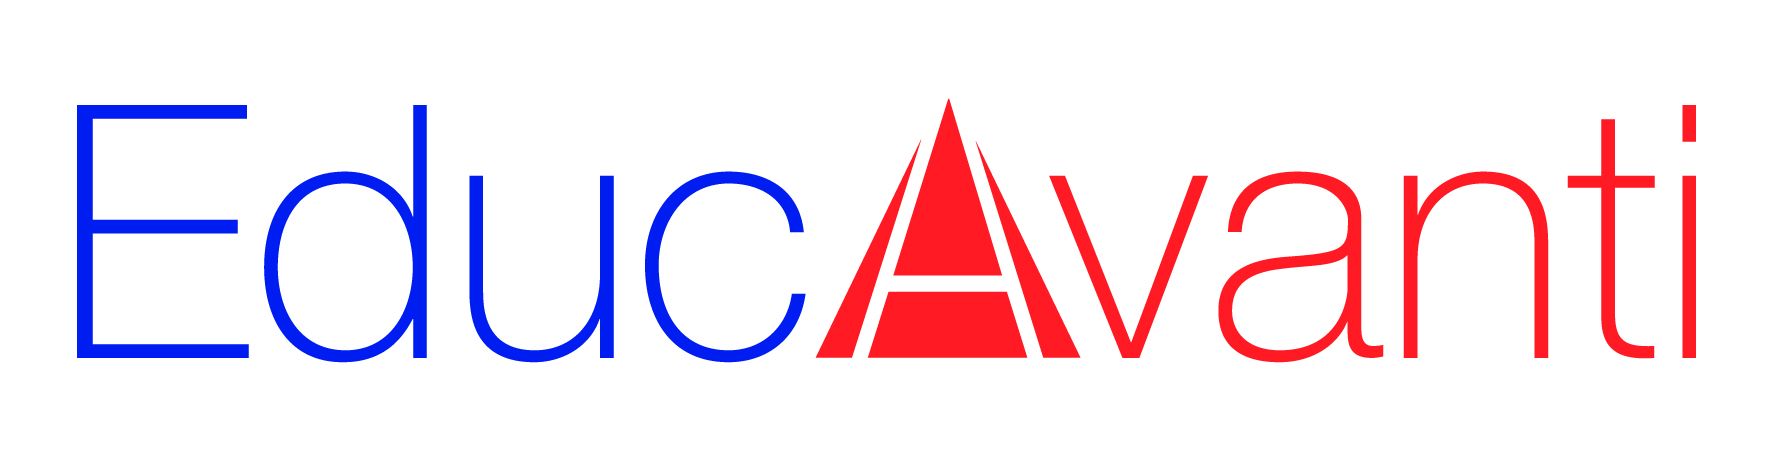 Logo Educavanti 